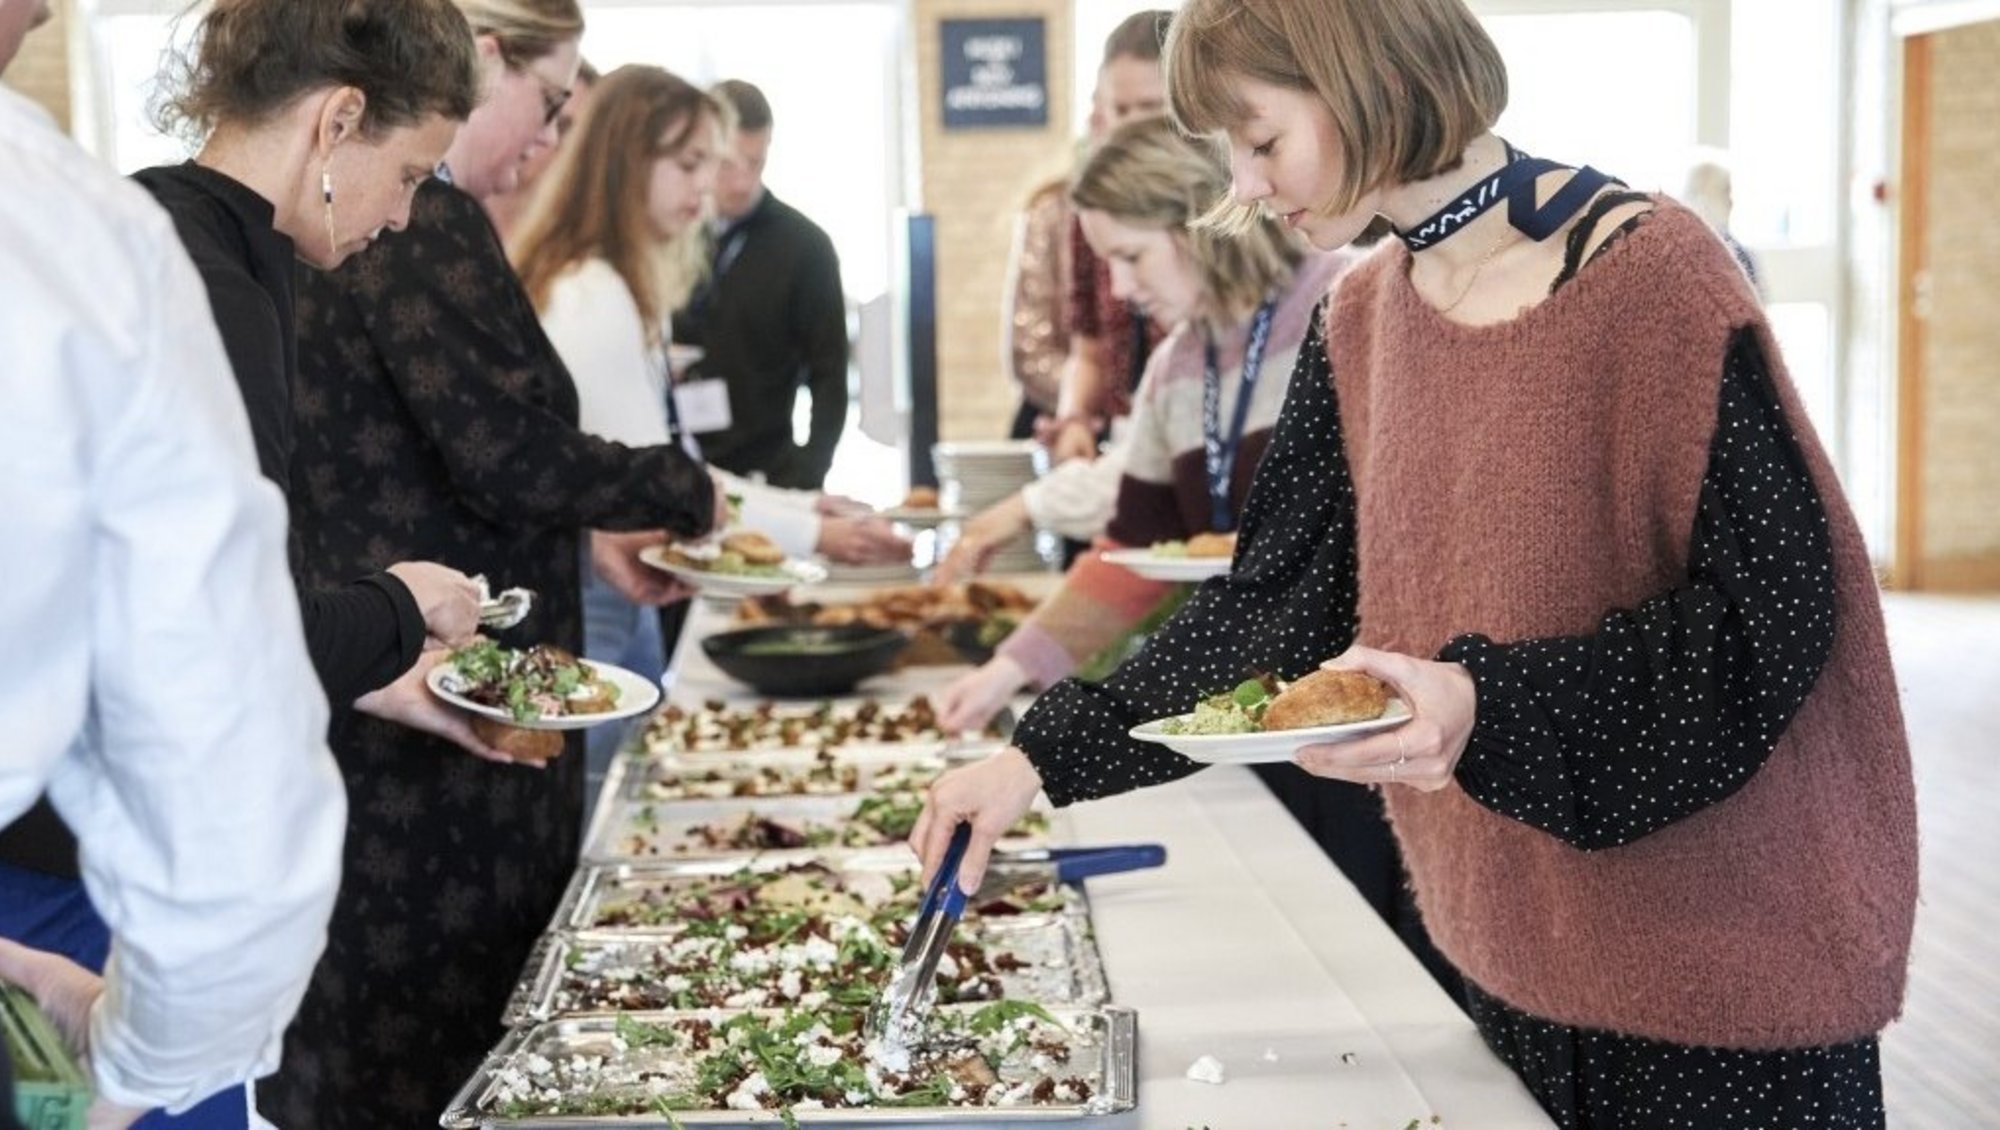 Deltagere ved konference tager vegetarisk mad i buffeten